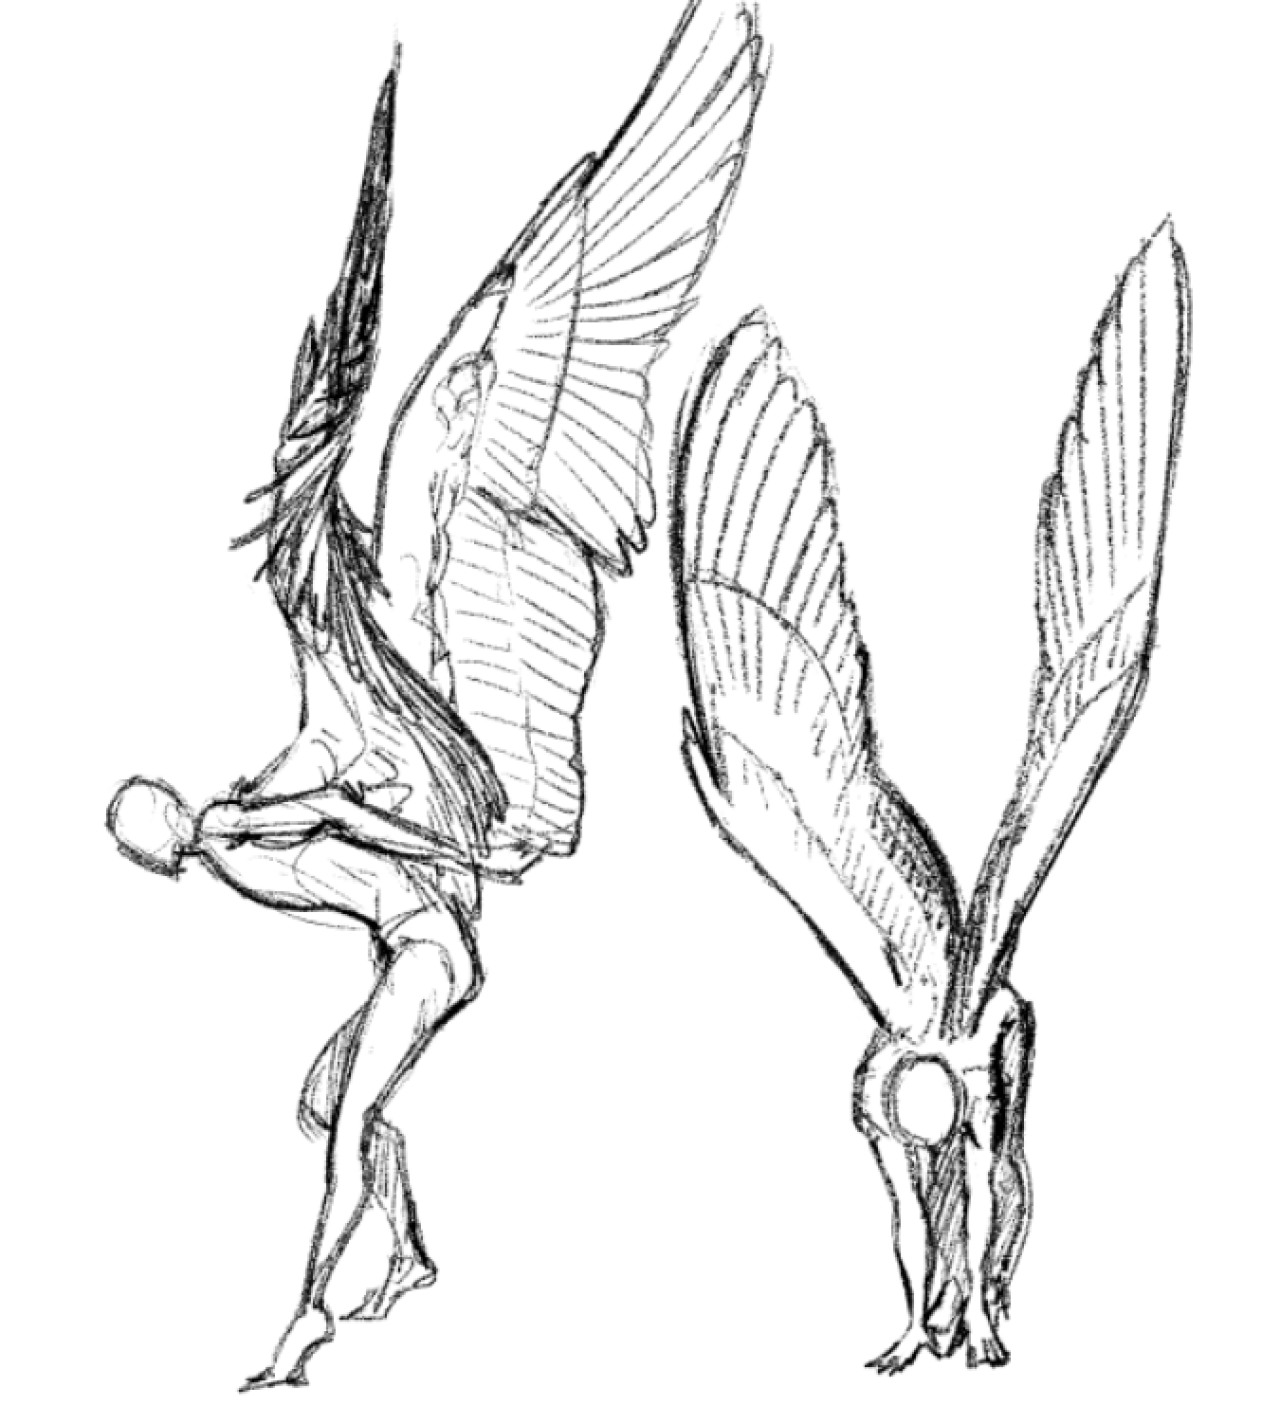 Звуки птицы тутор. Анатомия гарпии. Анатомия крыльев для рисования. Анатомия птиц для рисования. Крылья скетч.